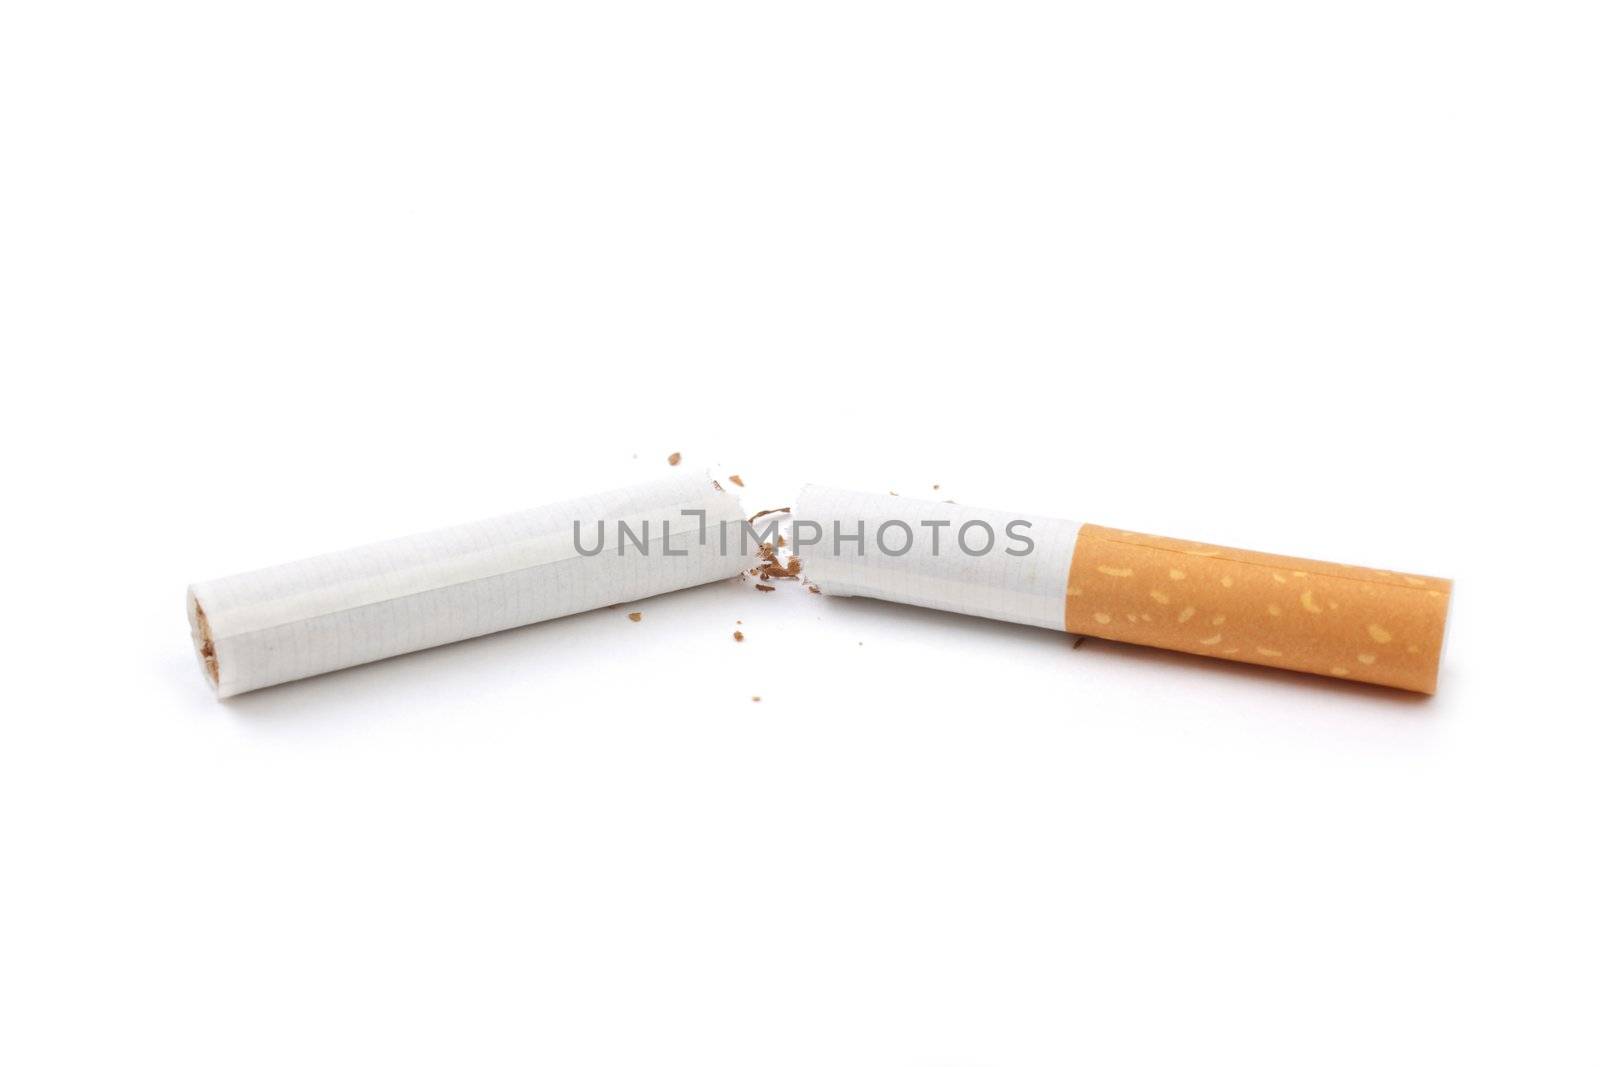 broken cigarette isolated on white background, focus on center